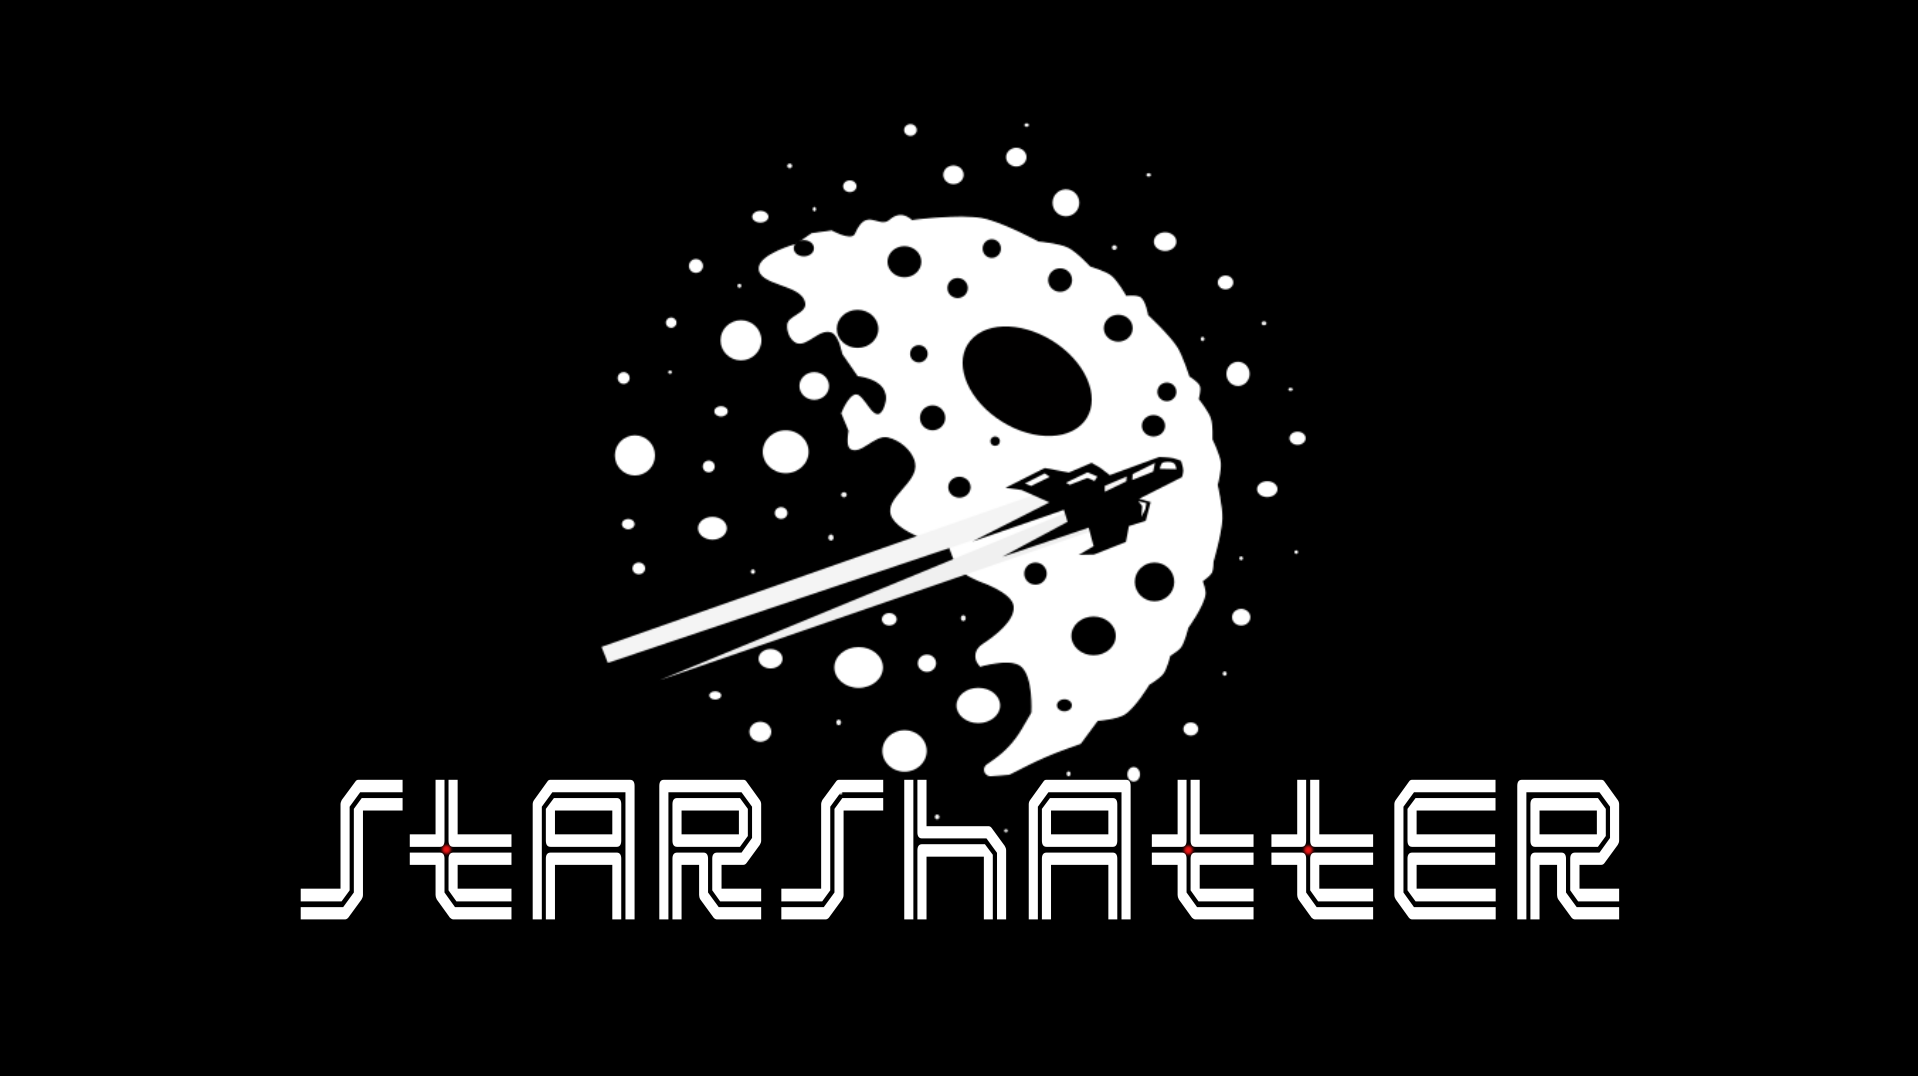 Starshatter